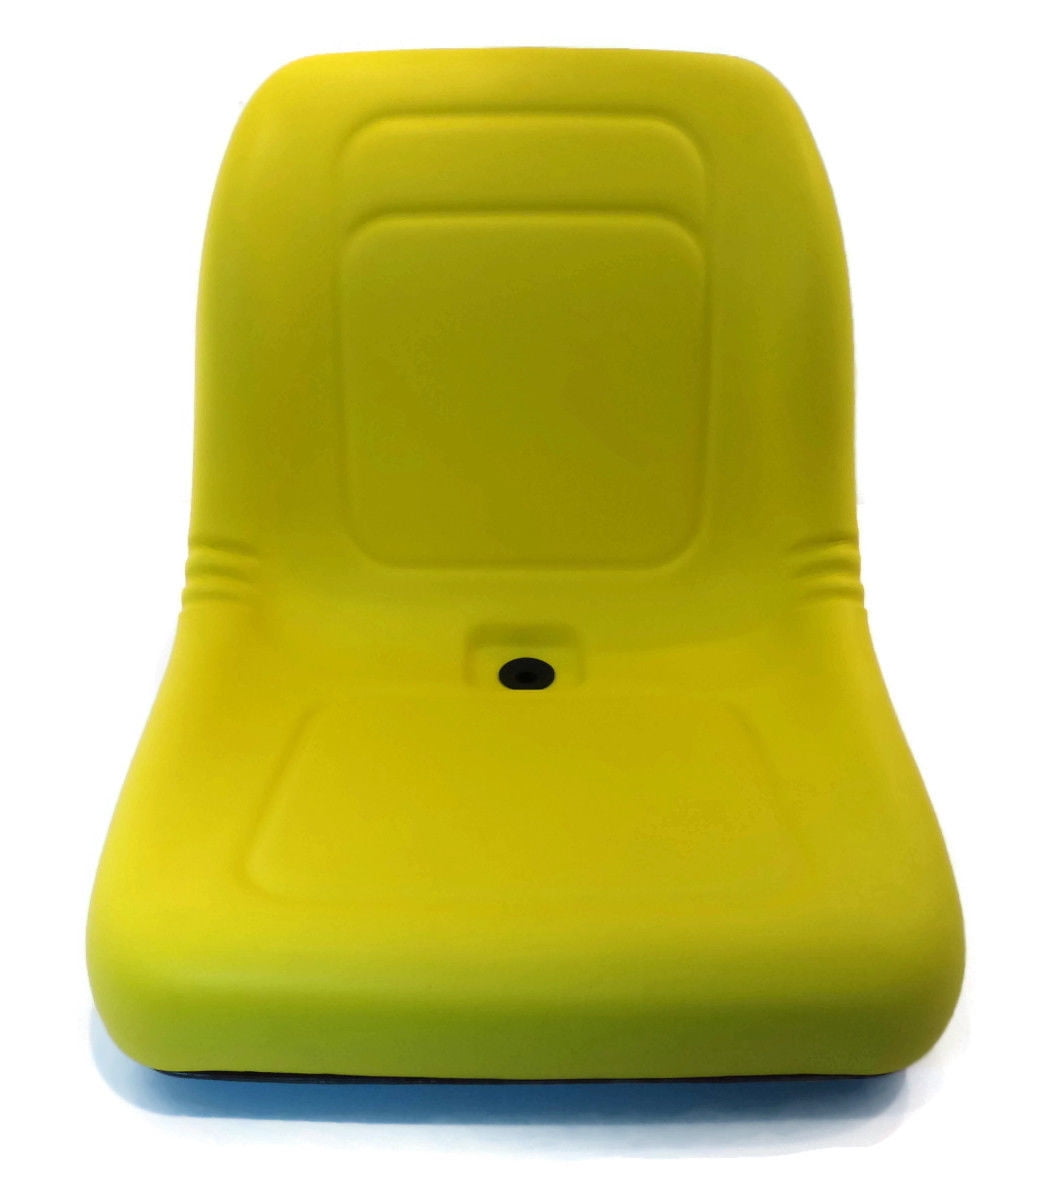 New Camo HIGH BACK SEAT for John Deere LVA10029 AM129969 AM129970 AM133476